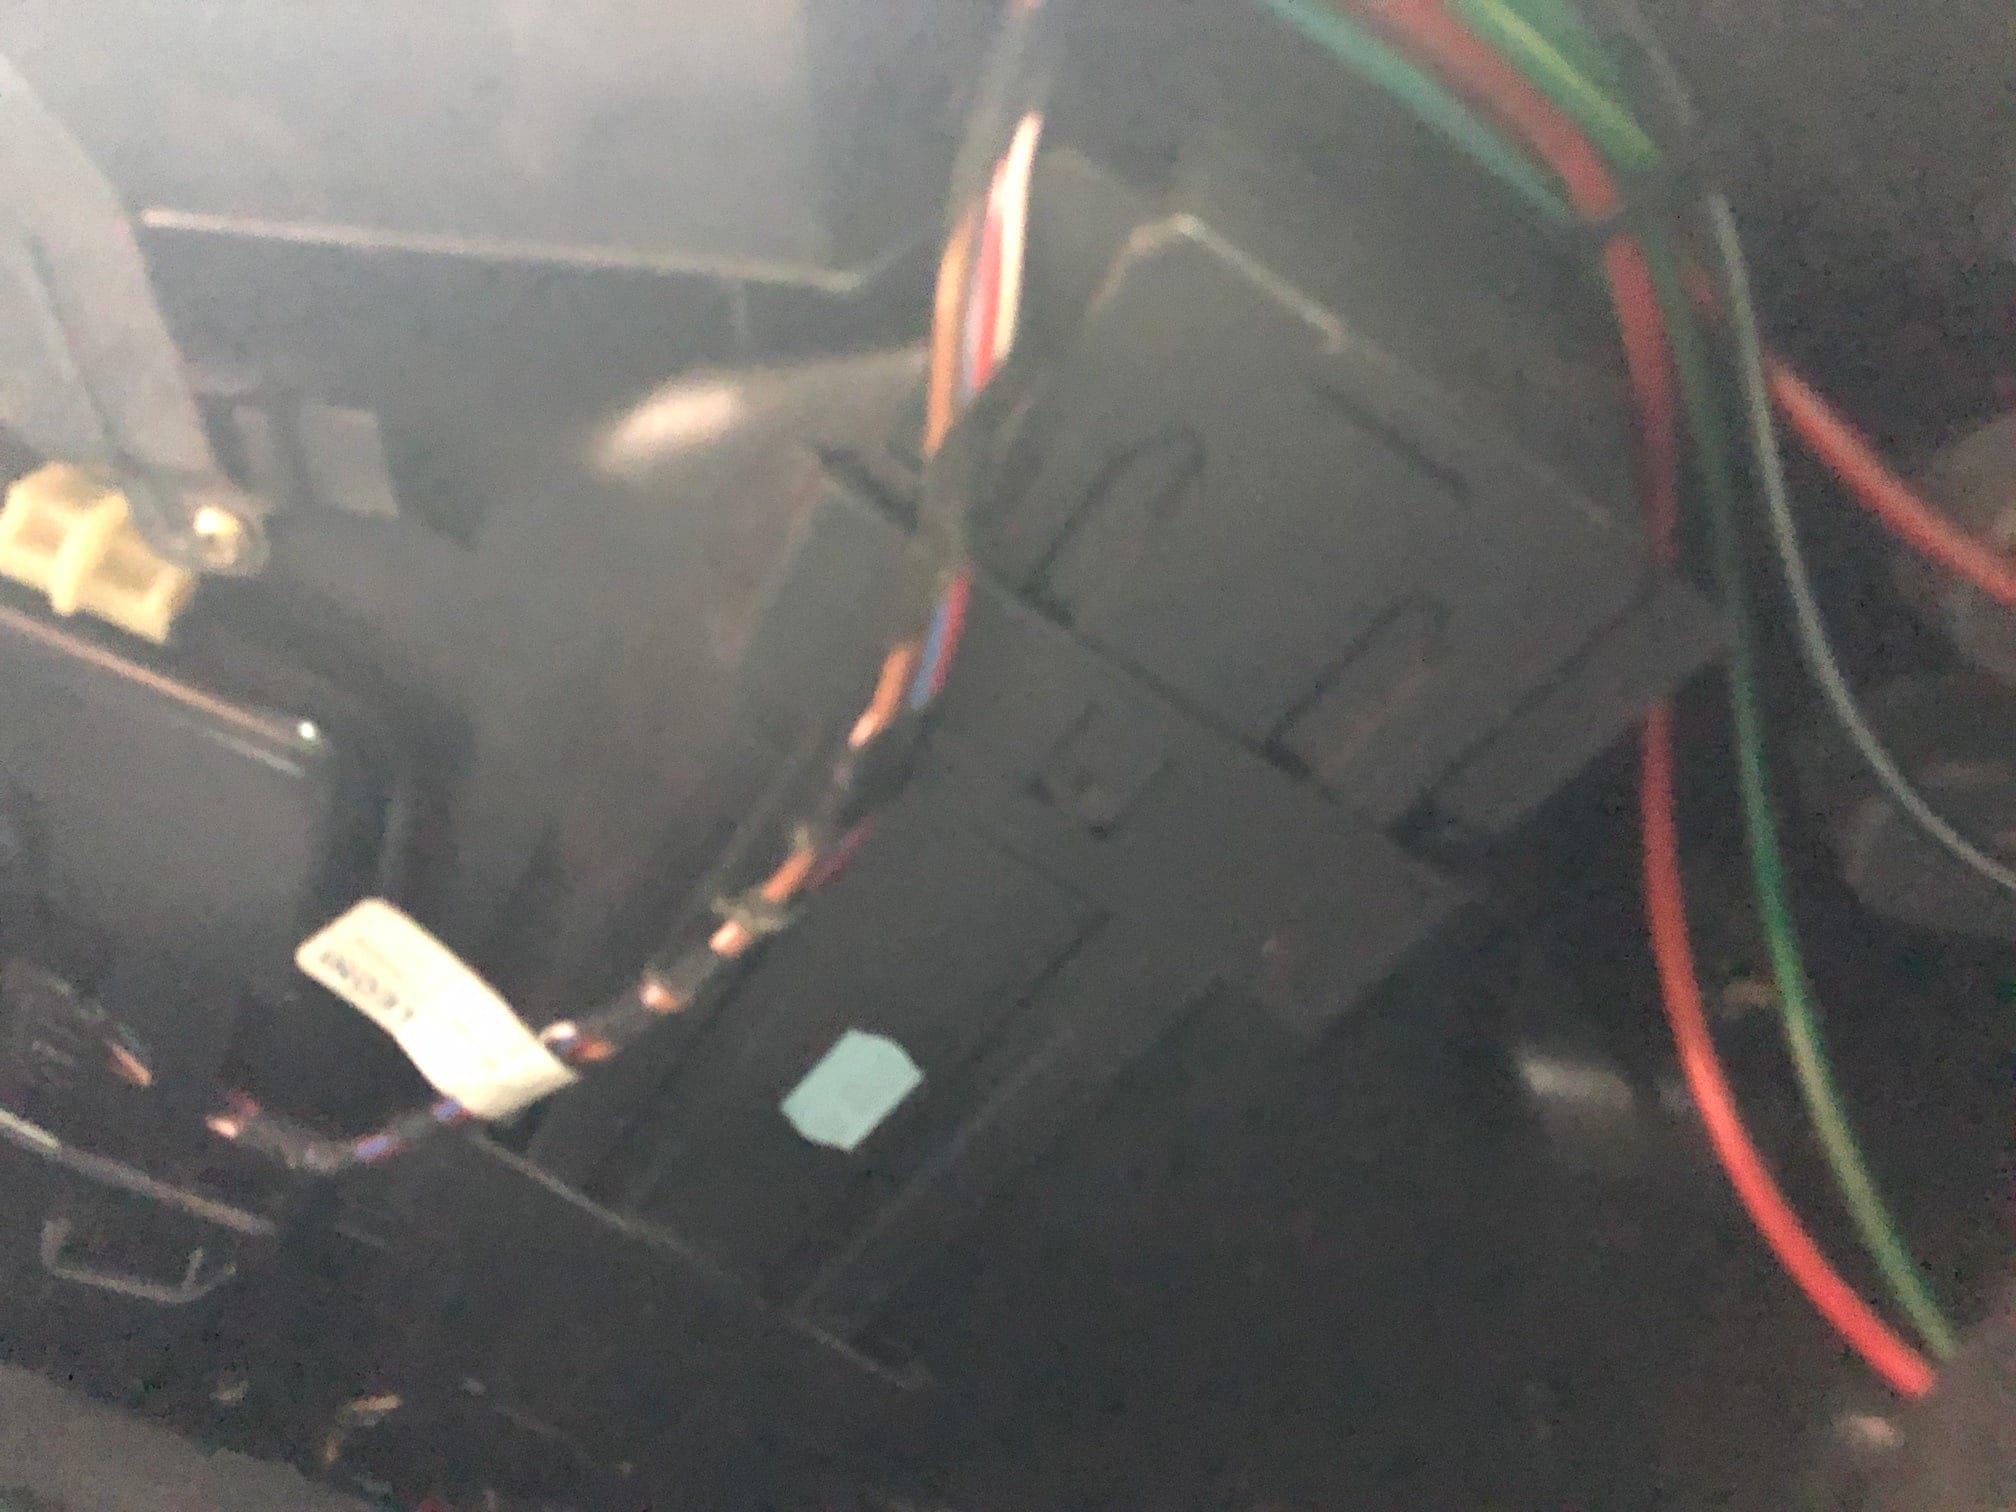 Images A C T Motor Repairs